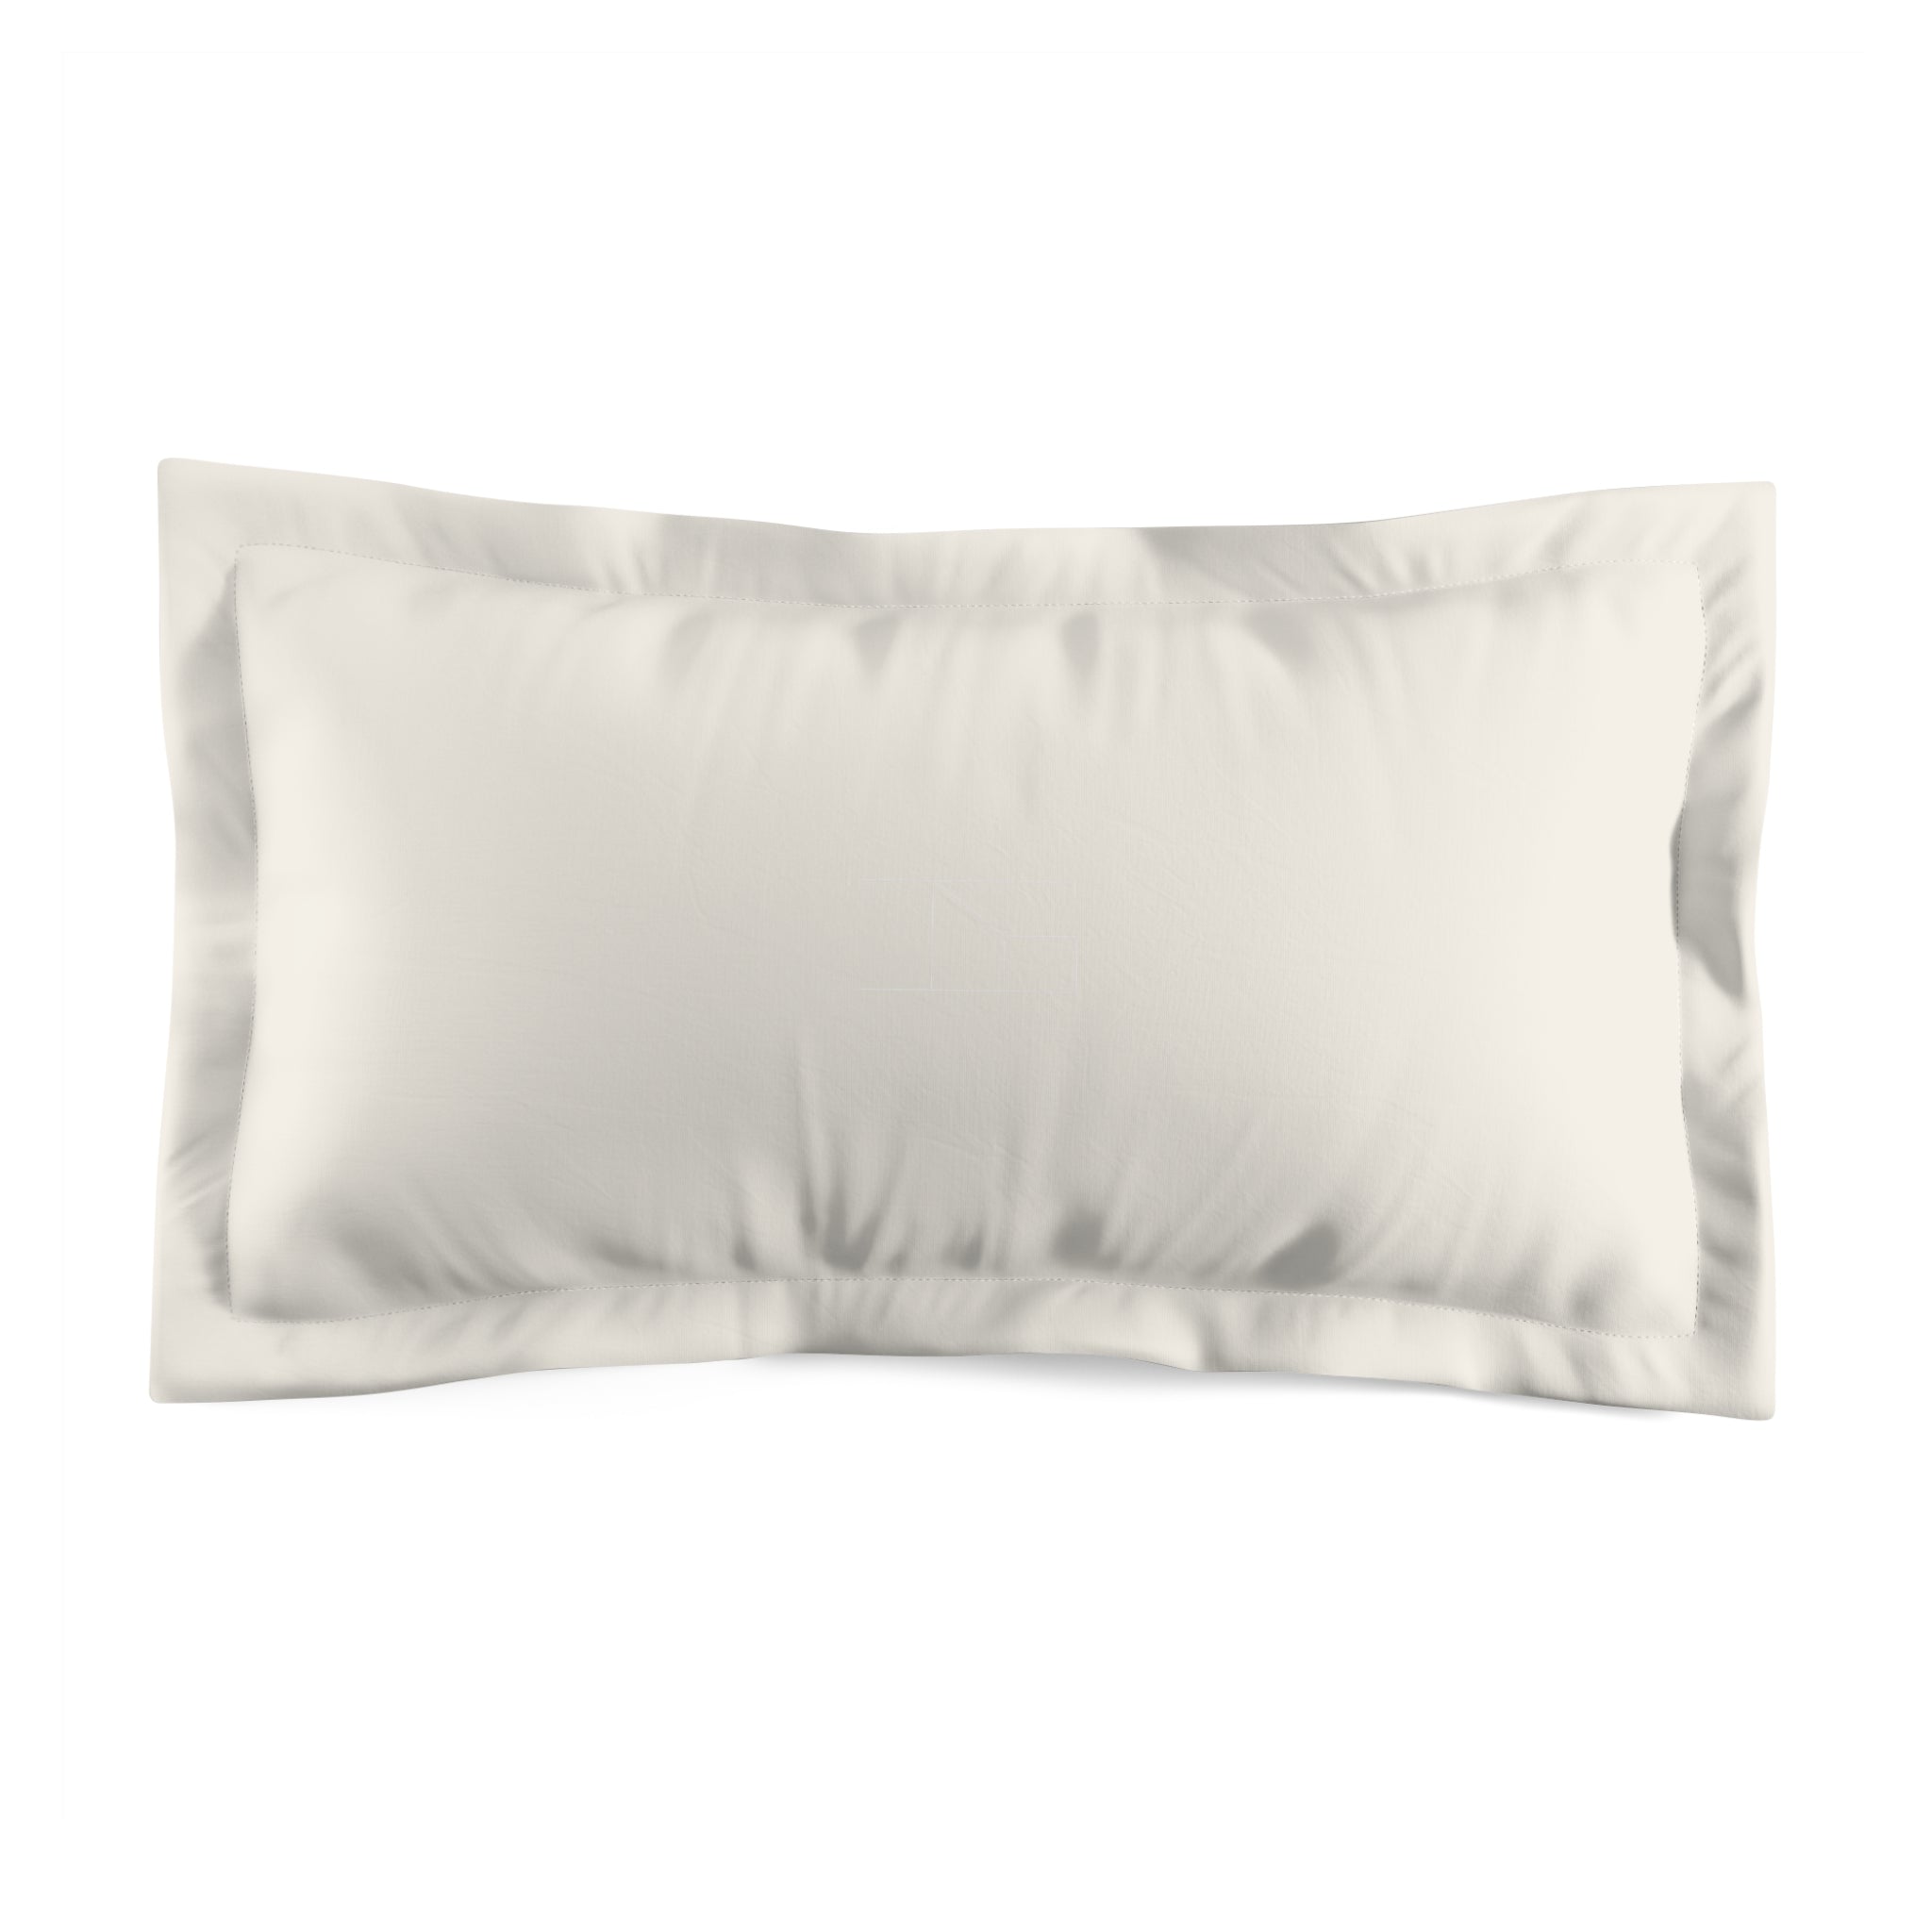 Pillow Sham - Bone White